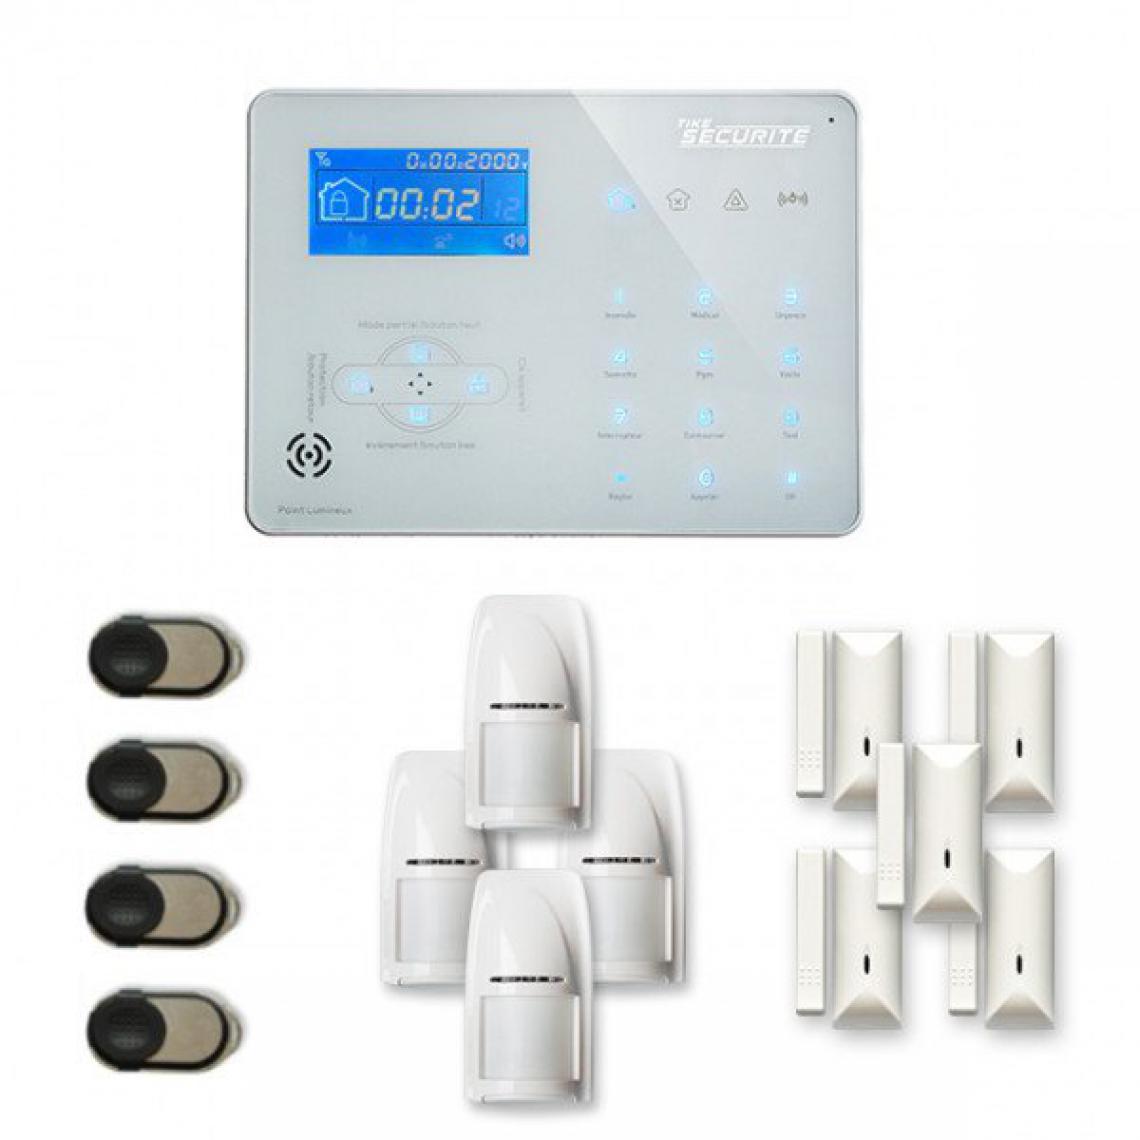 Tike Securite - Alarme maison sans fil ICE-B18 Compatible Box internet et GSM - Alarme connectée